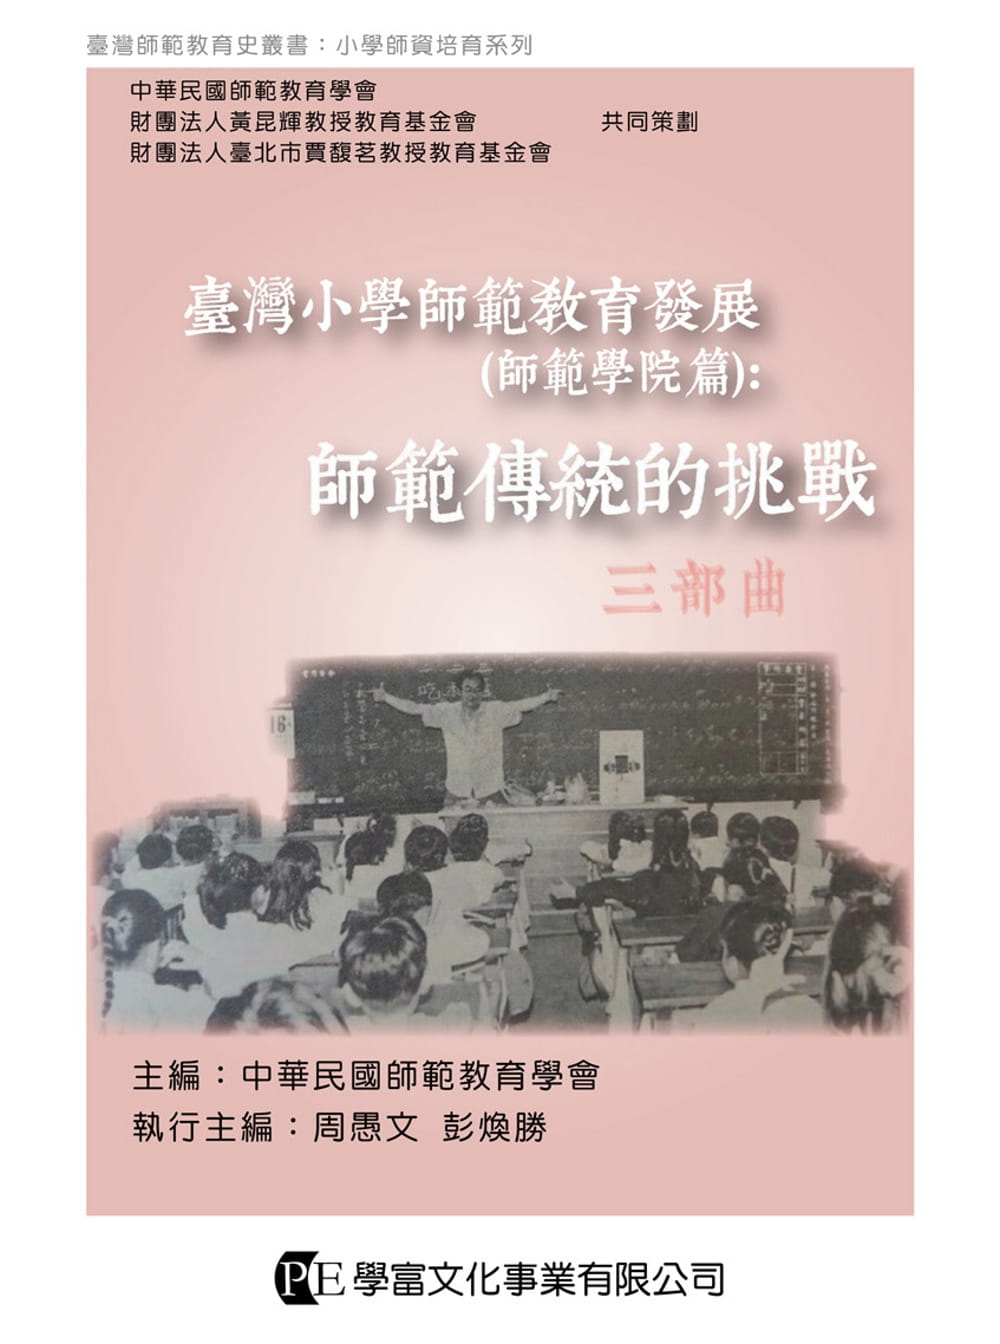 臺灣小學師範教育發展（師範學院篇）：師範傳統的挑戰